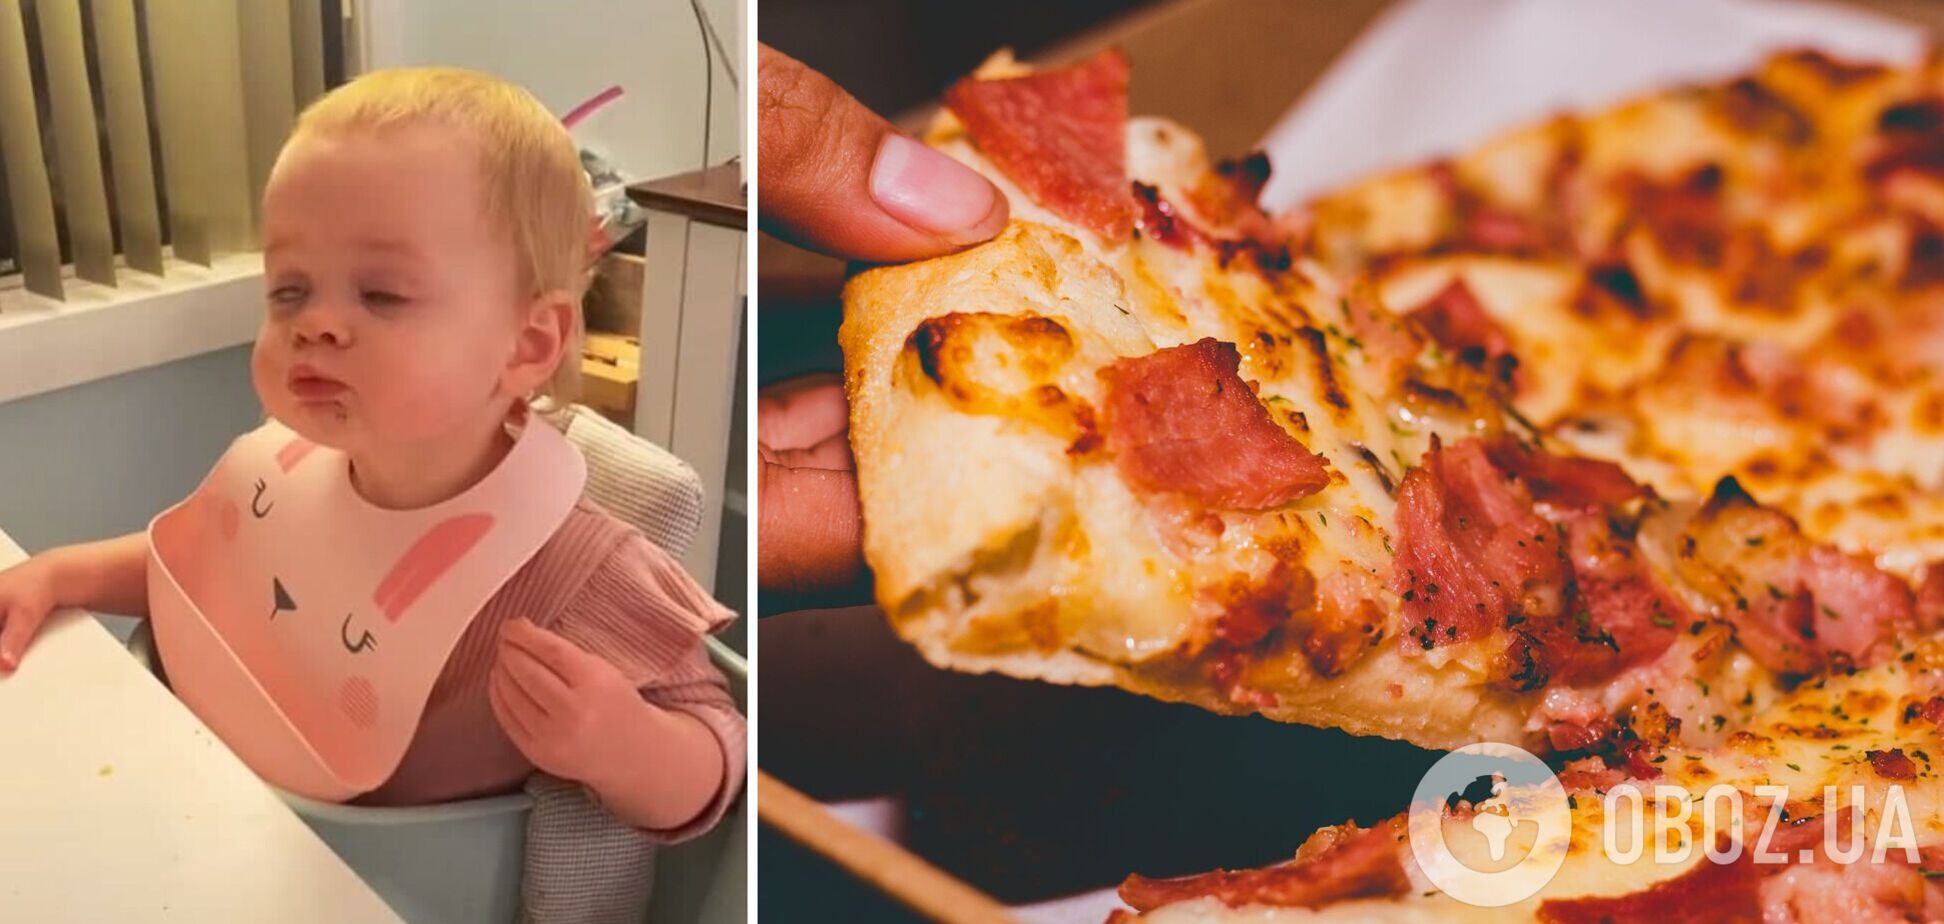 Годовалая девочка впервые попробовала пиццу и стала звездой сети